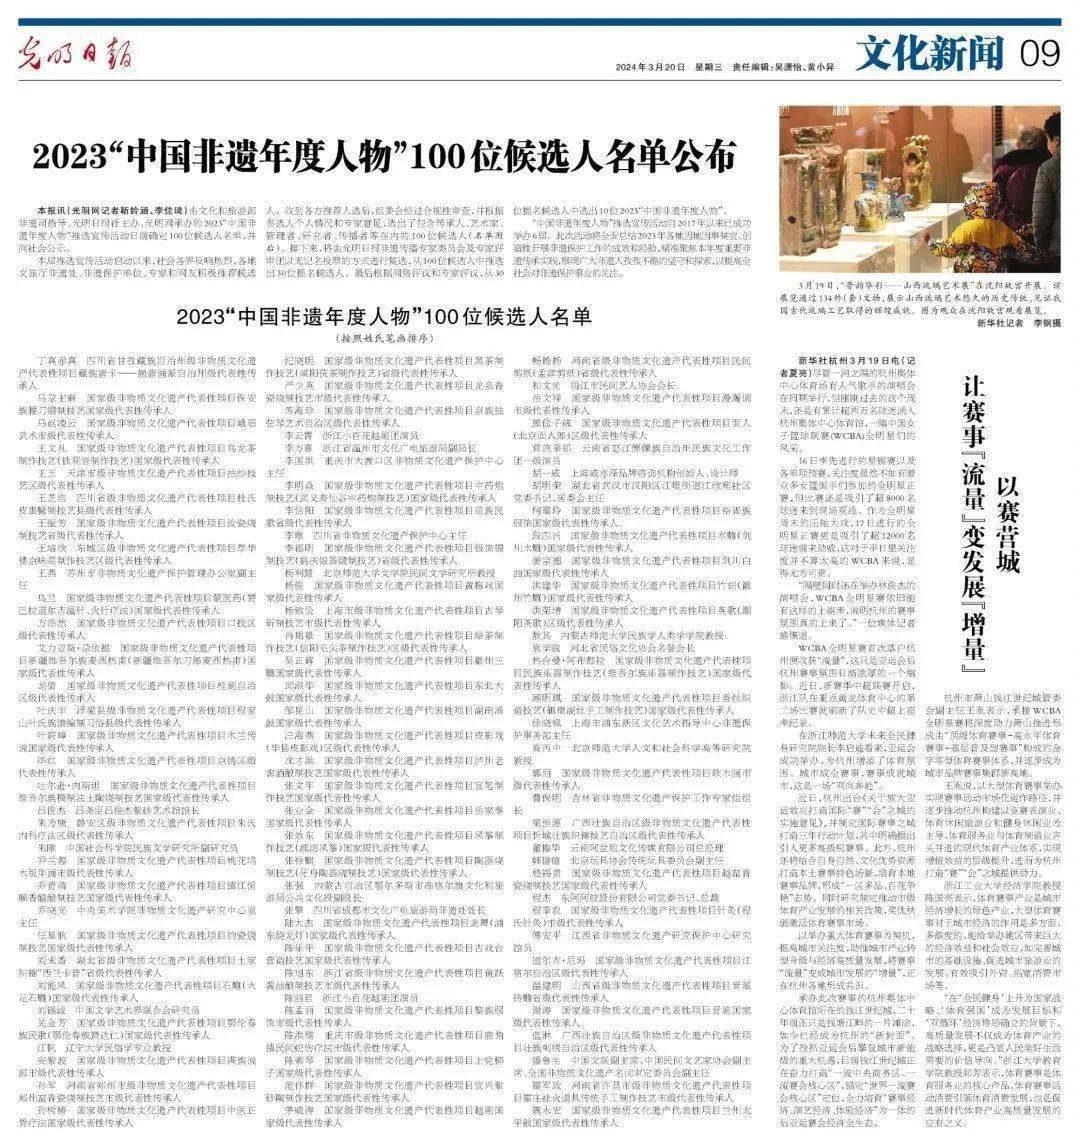 汕头12023中国非遗年度人物100位候选人名单出炉